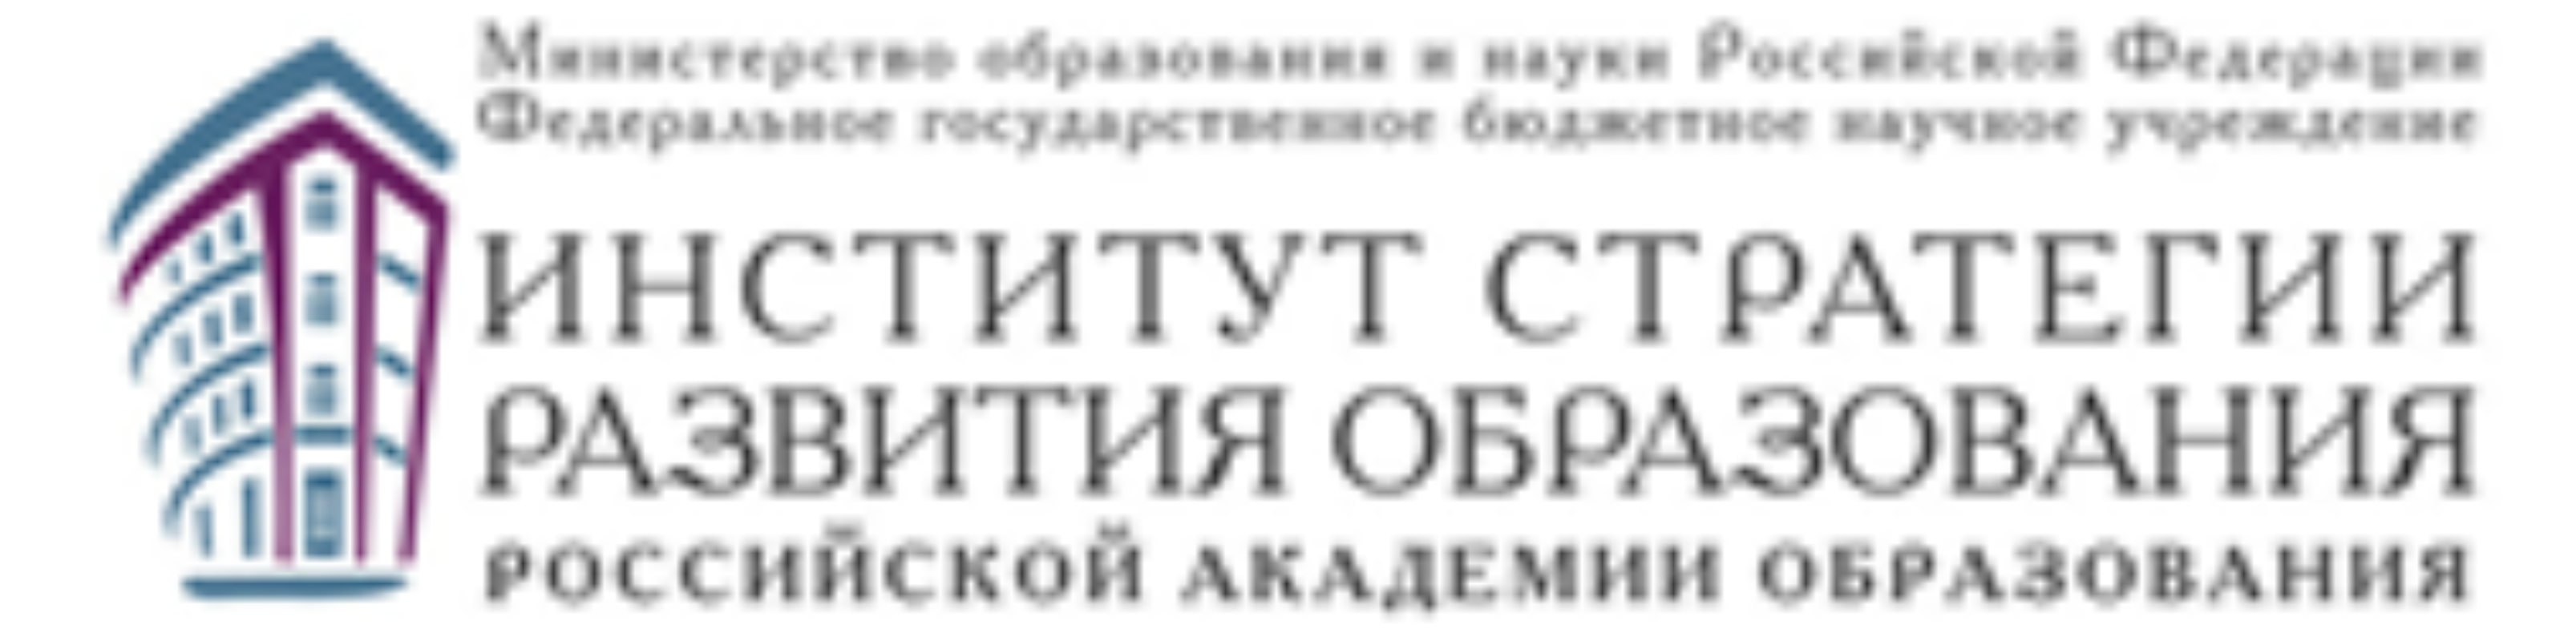 Российская академия образования и министерство образования